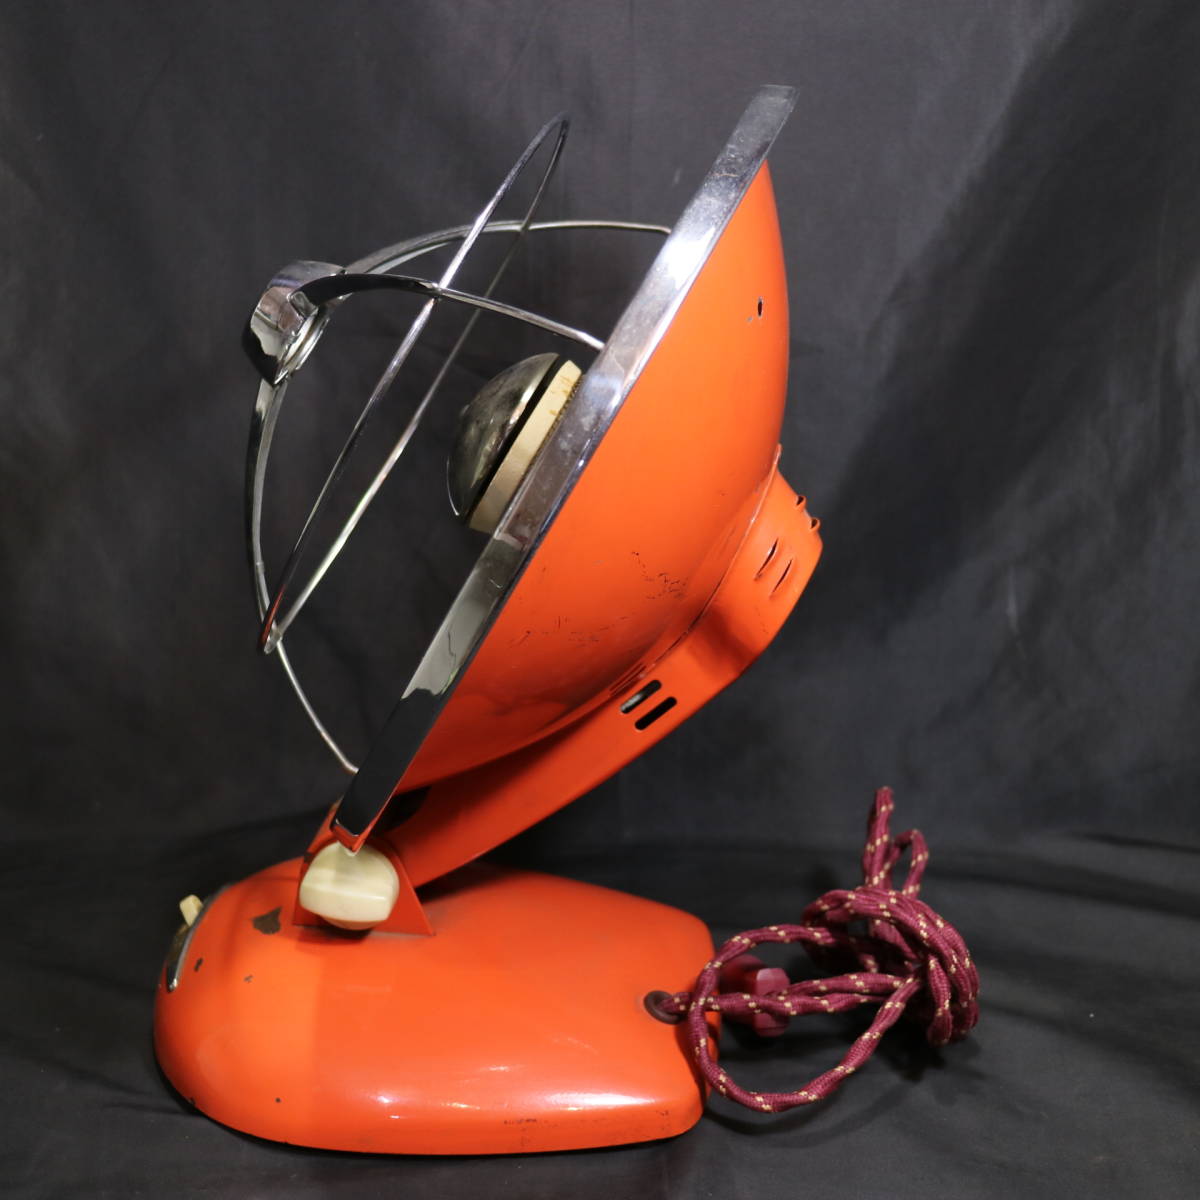 通電確認済み 当時もの ナショナル 反射ストーブ 丸型 オレンジ 松下電器 ヴィンテージ 電化製品 レトロ家電 シャビー 古物 中古の画像7